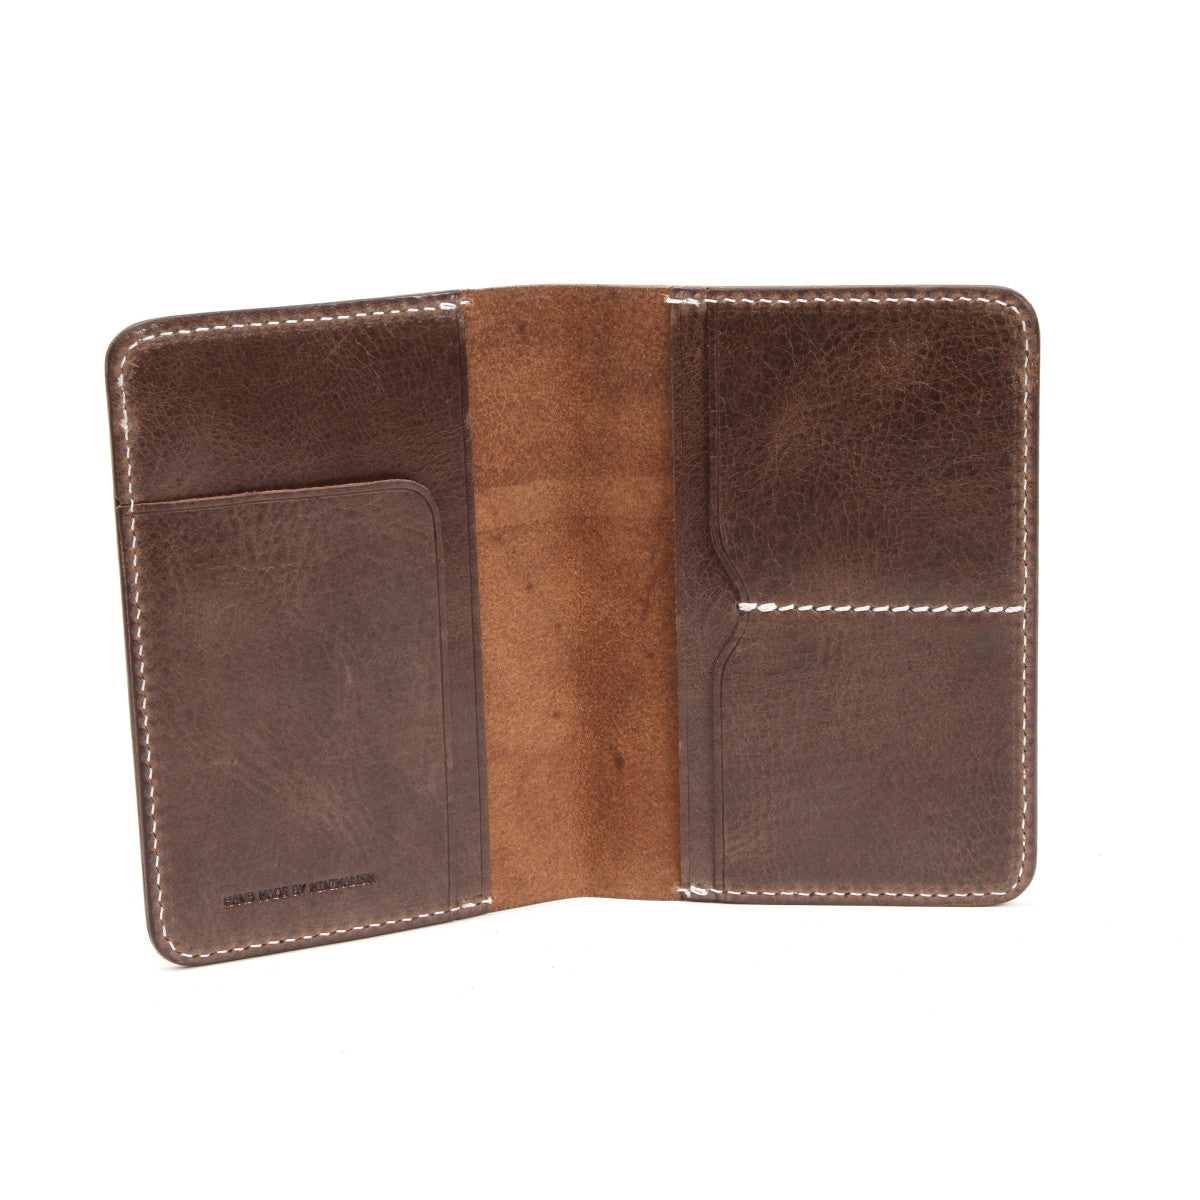 Handmade Leather Passport Wallet | Passport Holder | Travel Organizer Wallet